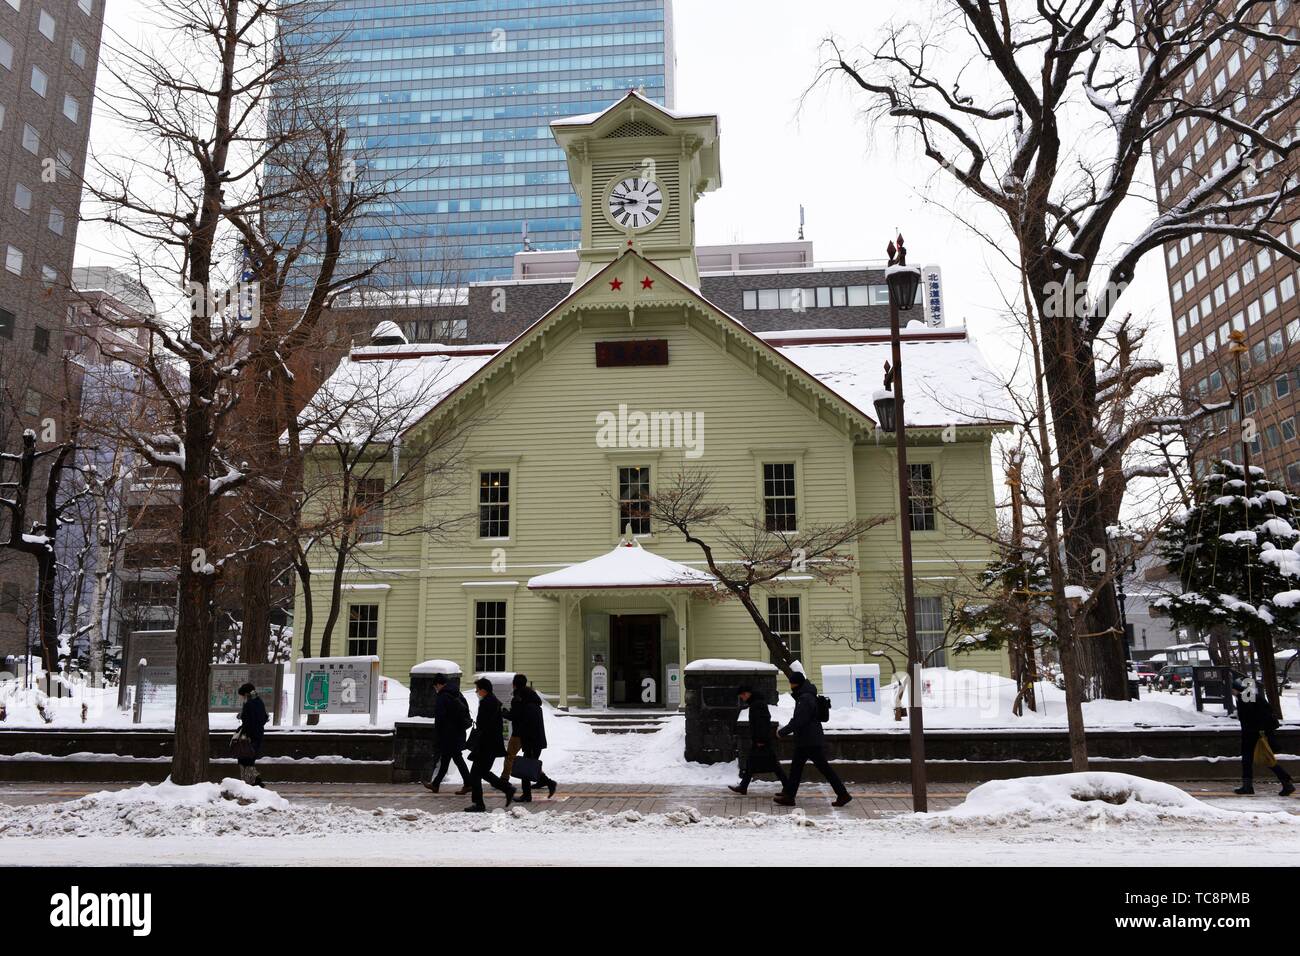 Sapporo chronomètrent la tour couverte de neige, Hokkaido, Japon, Asie. Banque D'Images